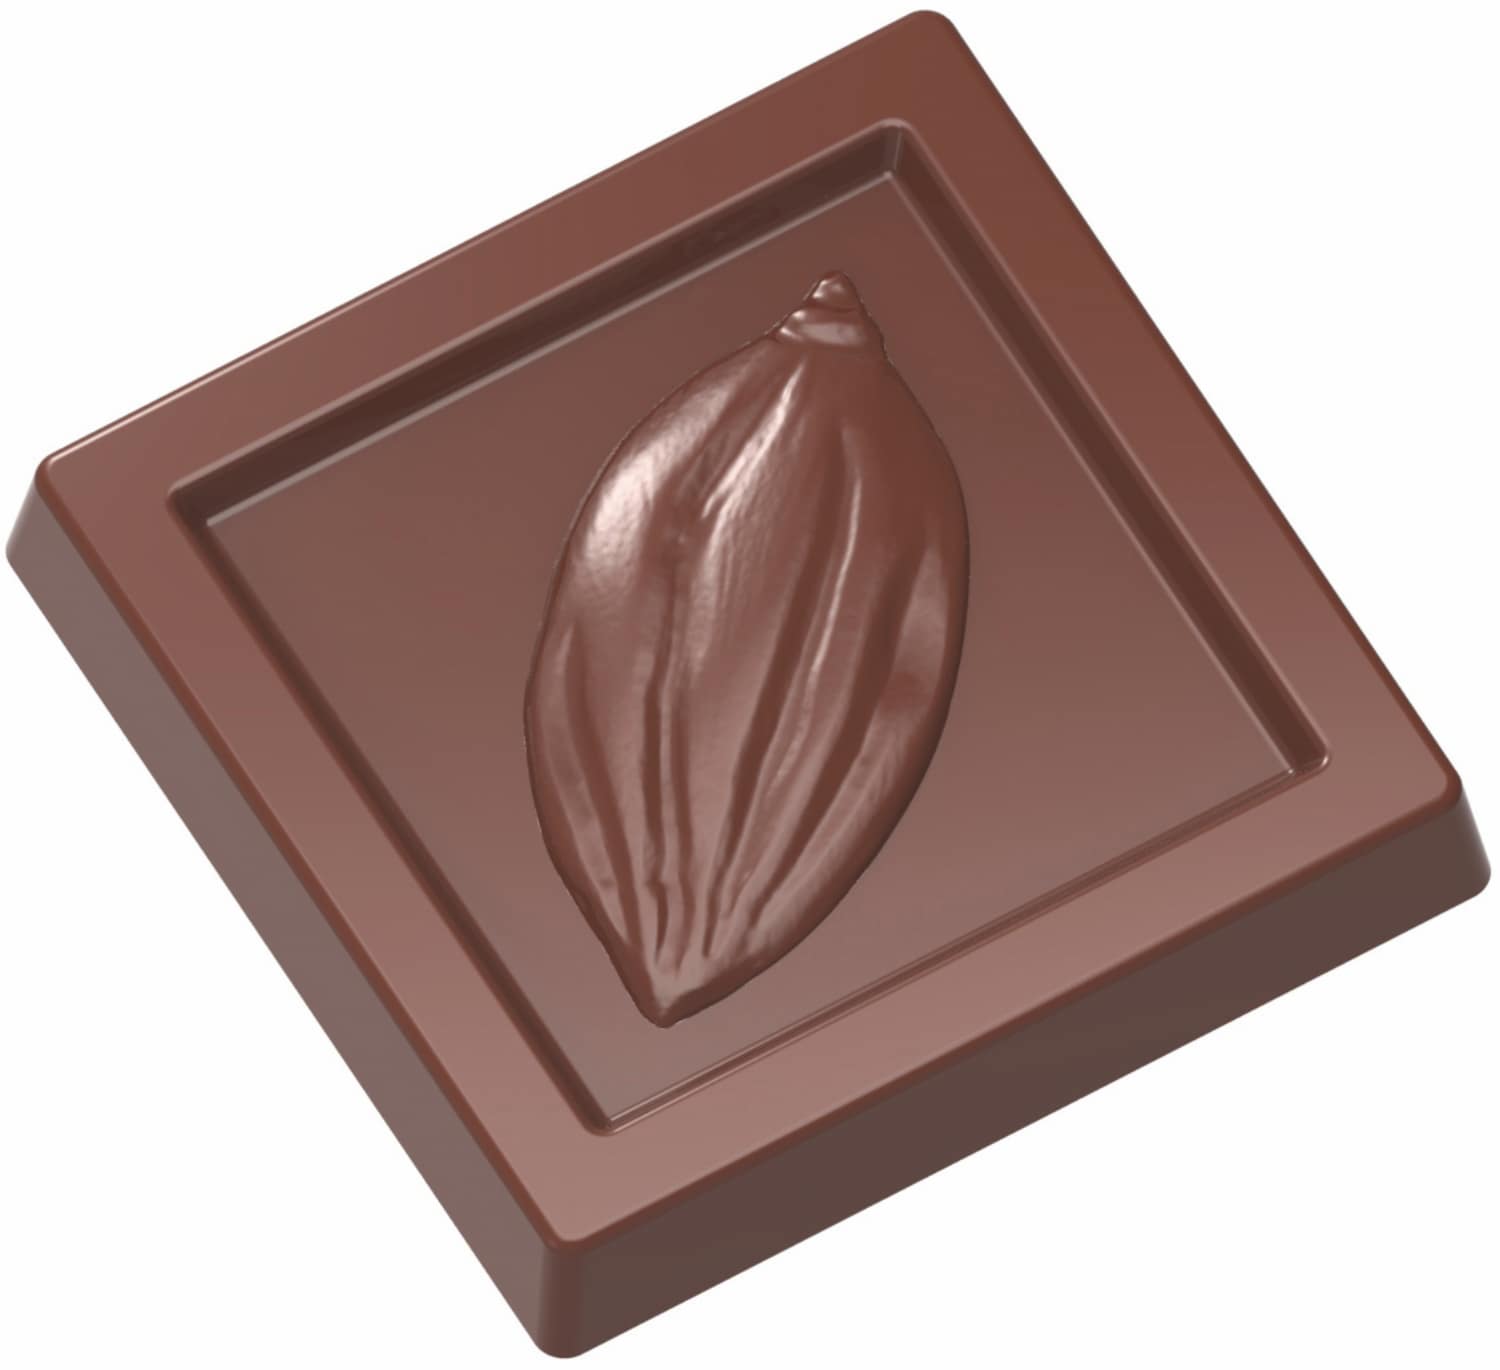 Schokoladenform "Kakaobohne" 421901